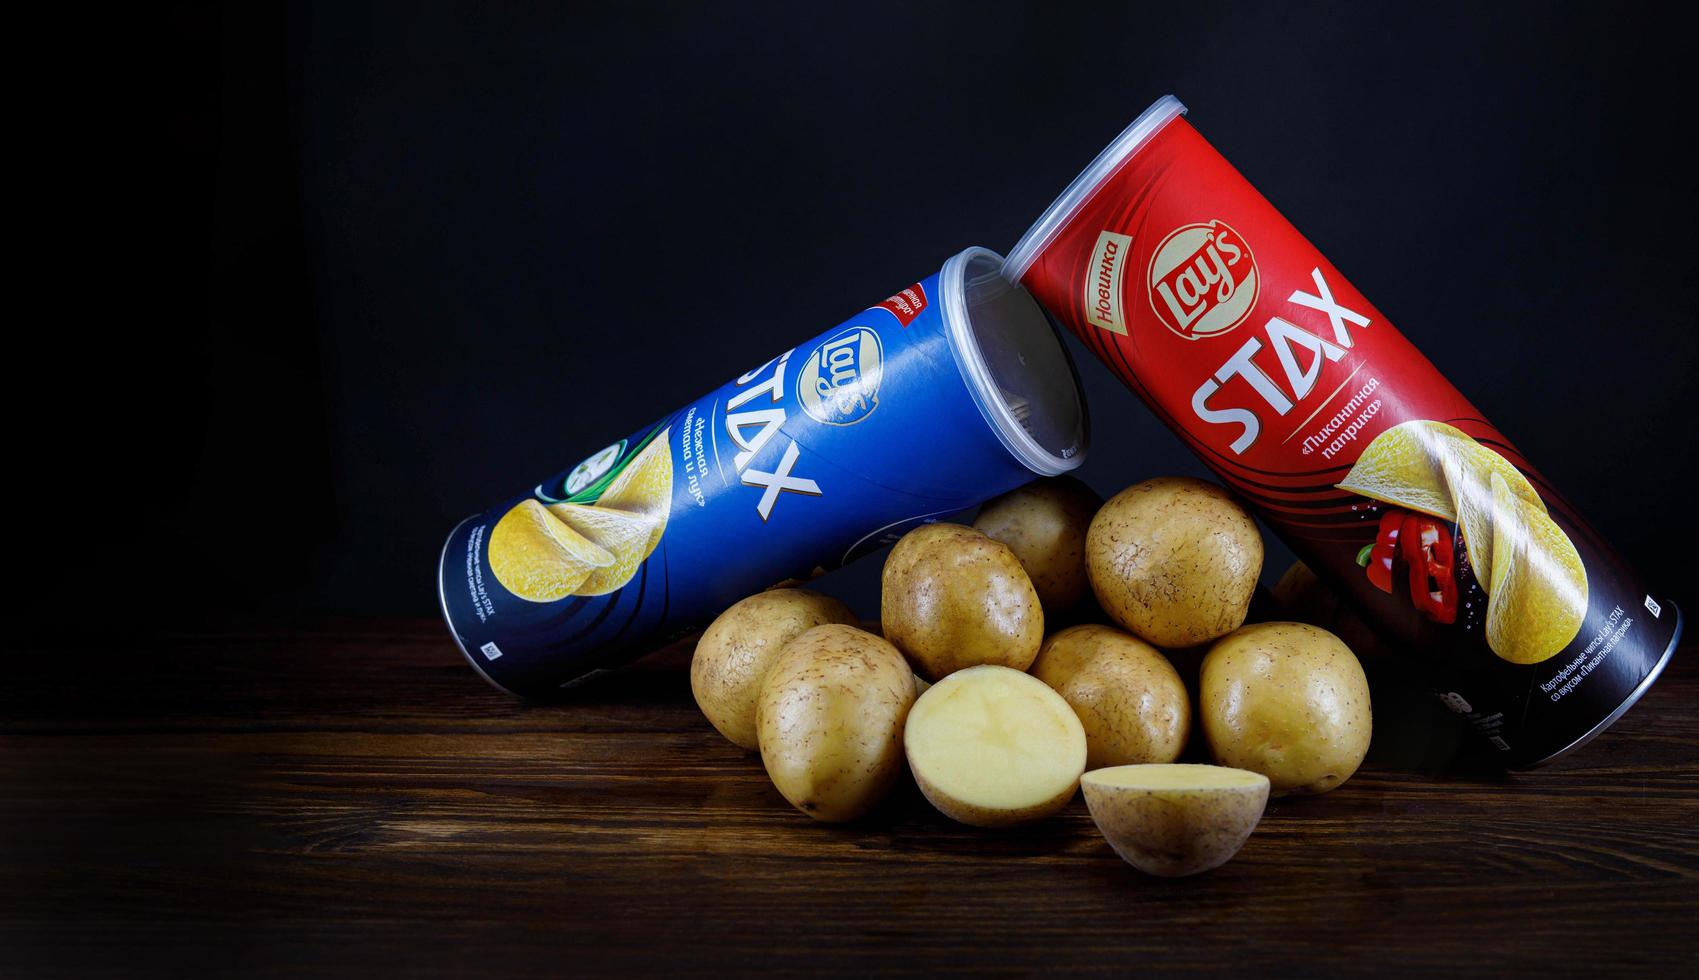 krasnoyarsk, russie - 05 janvier 2022 deux boîtes de chips se trouvent sur une table à côté de pommes de terre fraîches sur fond sombre. photo